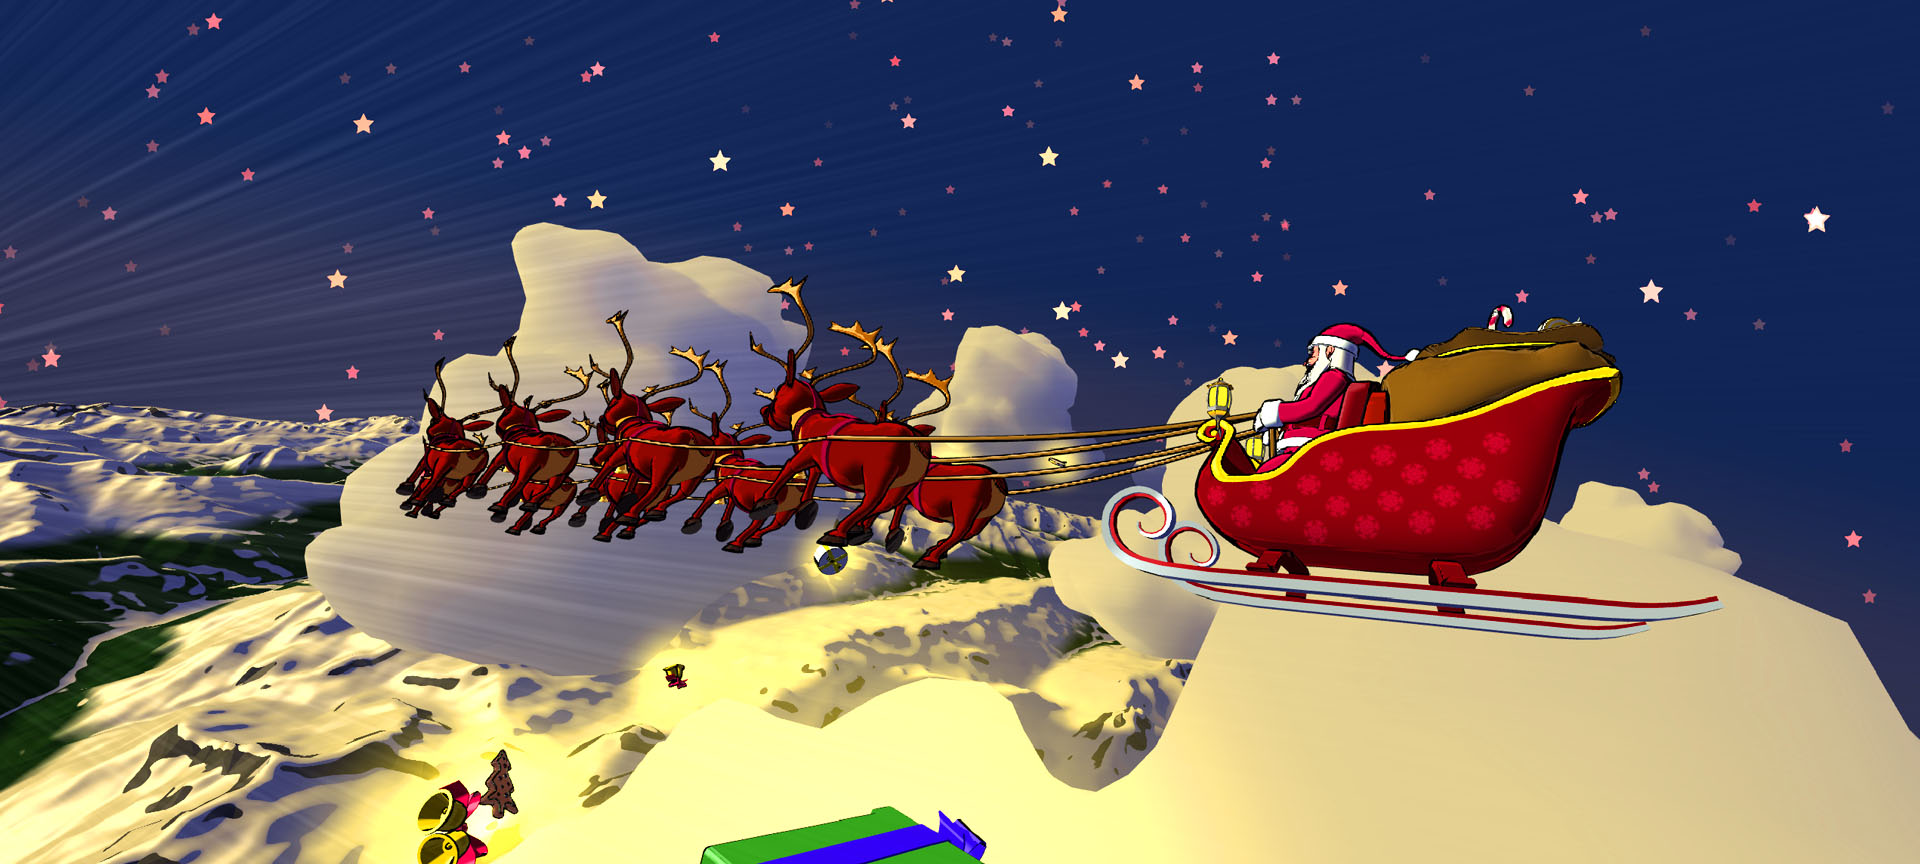 Flying Santa Claus’s sleigh – SkyTale Studios